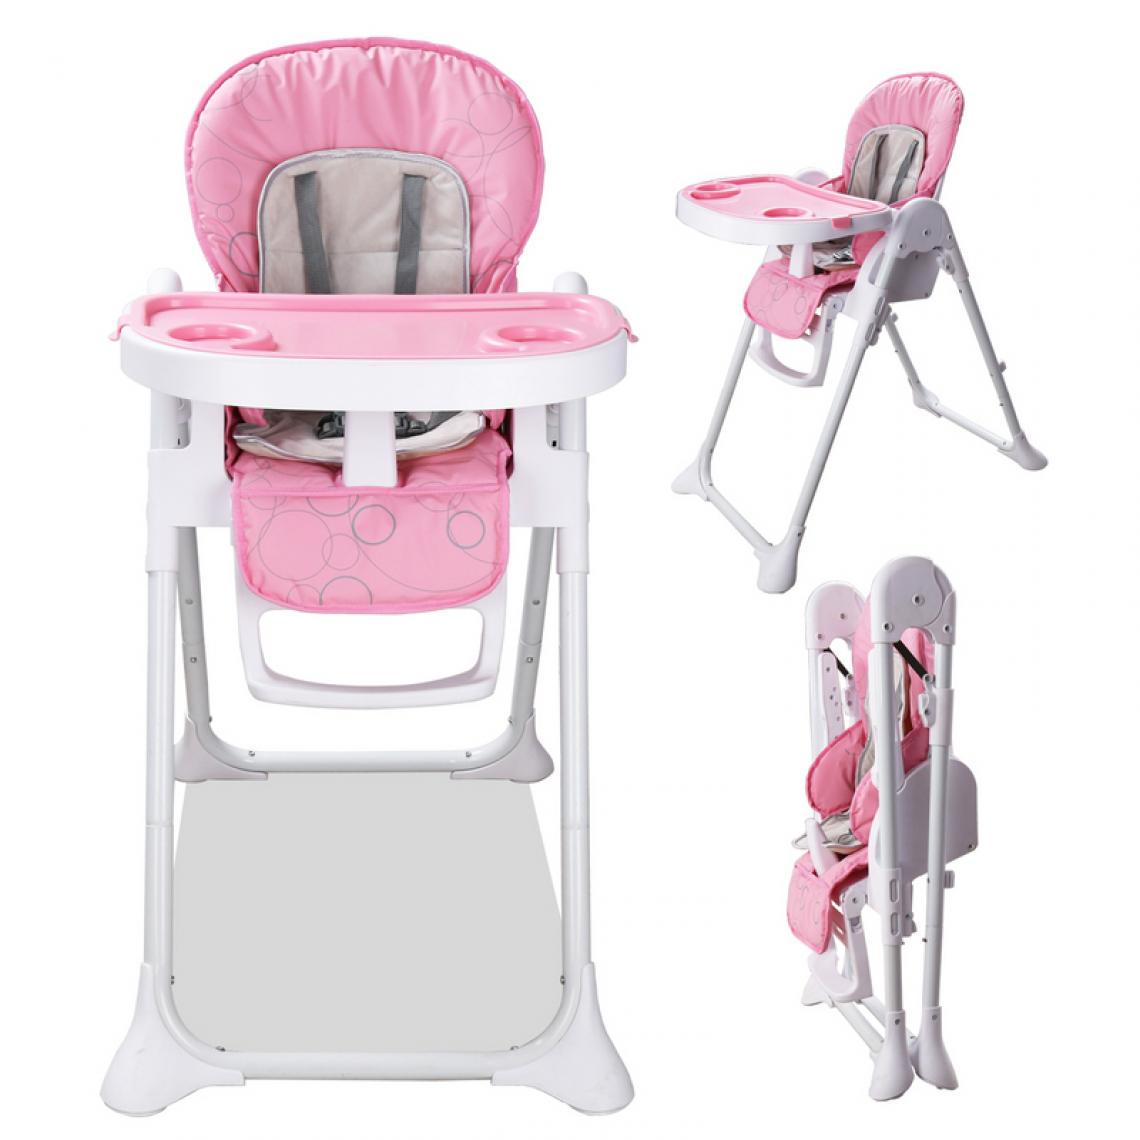 Einfeben - Chaise haute bébé, enfant pliable, réglable hauteur, dossier et tablette - rose - Chaises